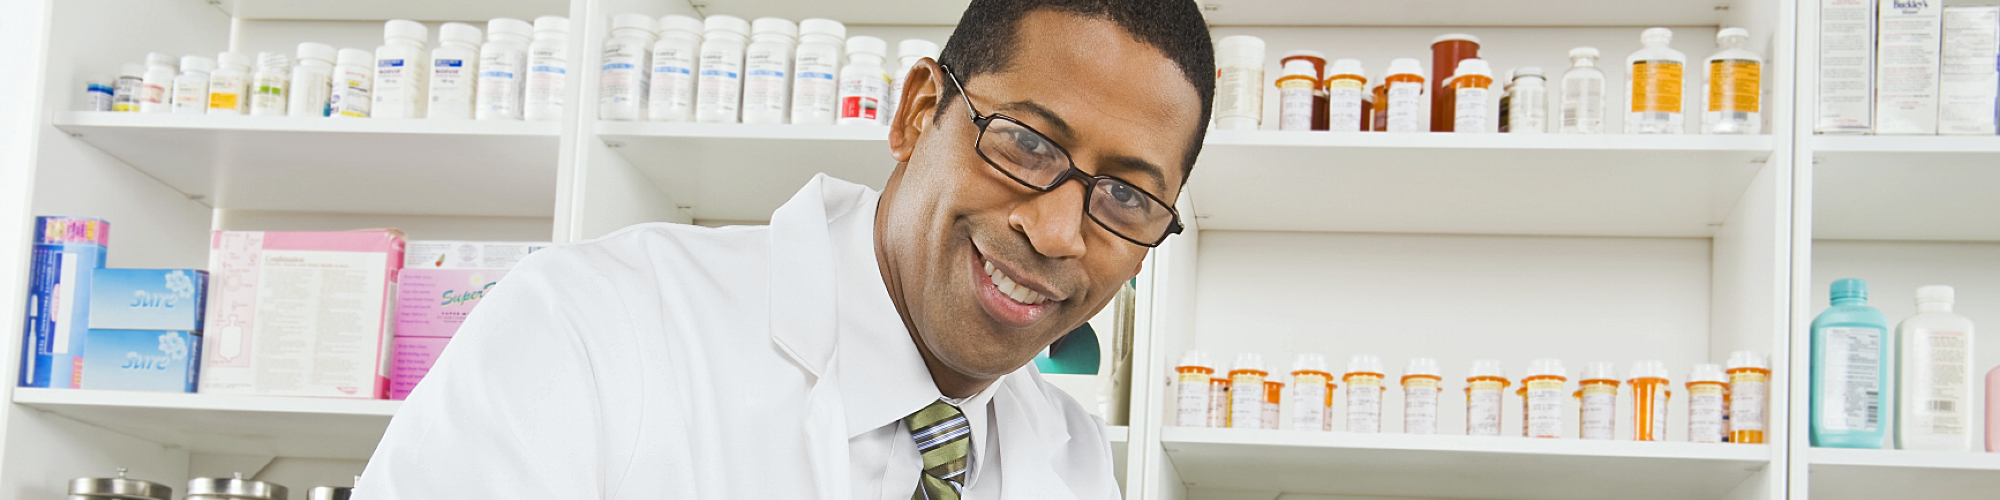 pharmacist smiling